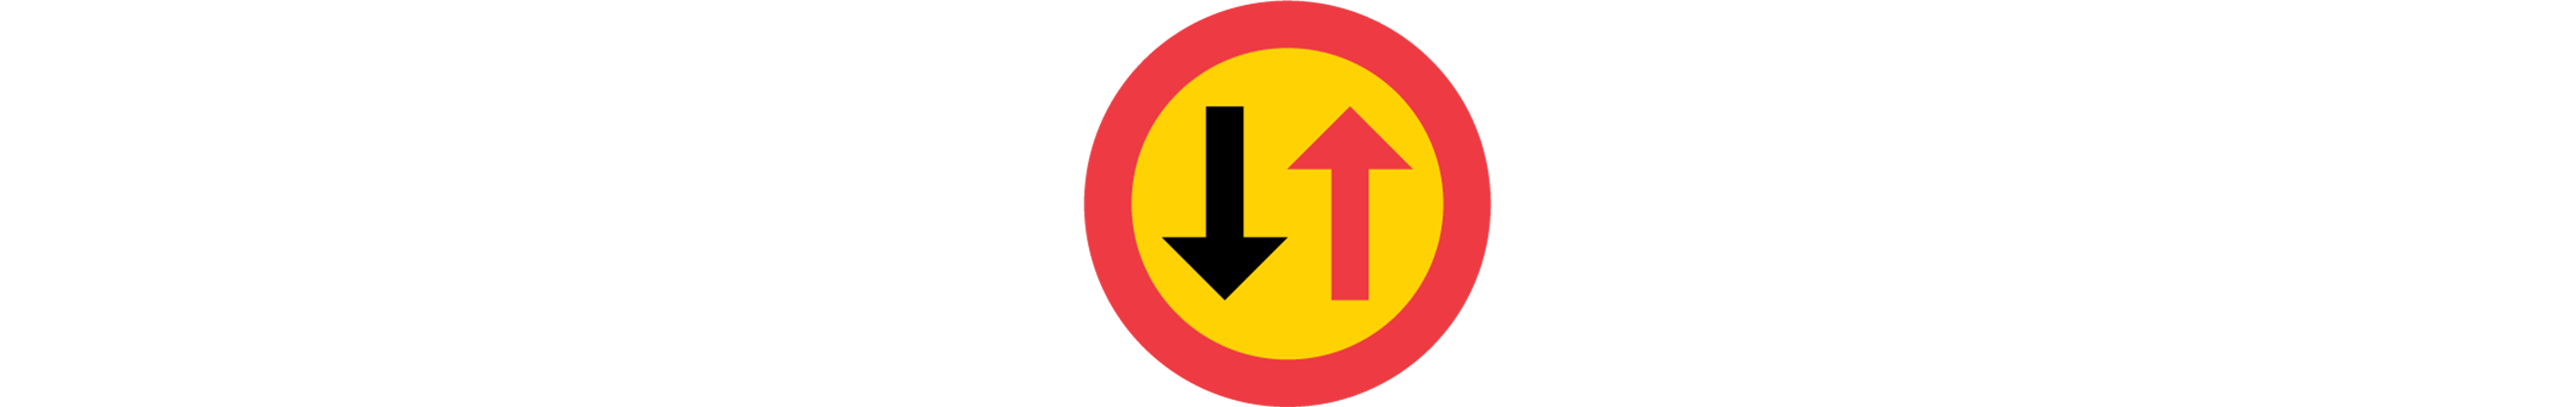 vägmärke för väjningsplikt mot mötande trafik